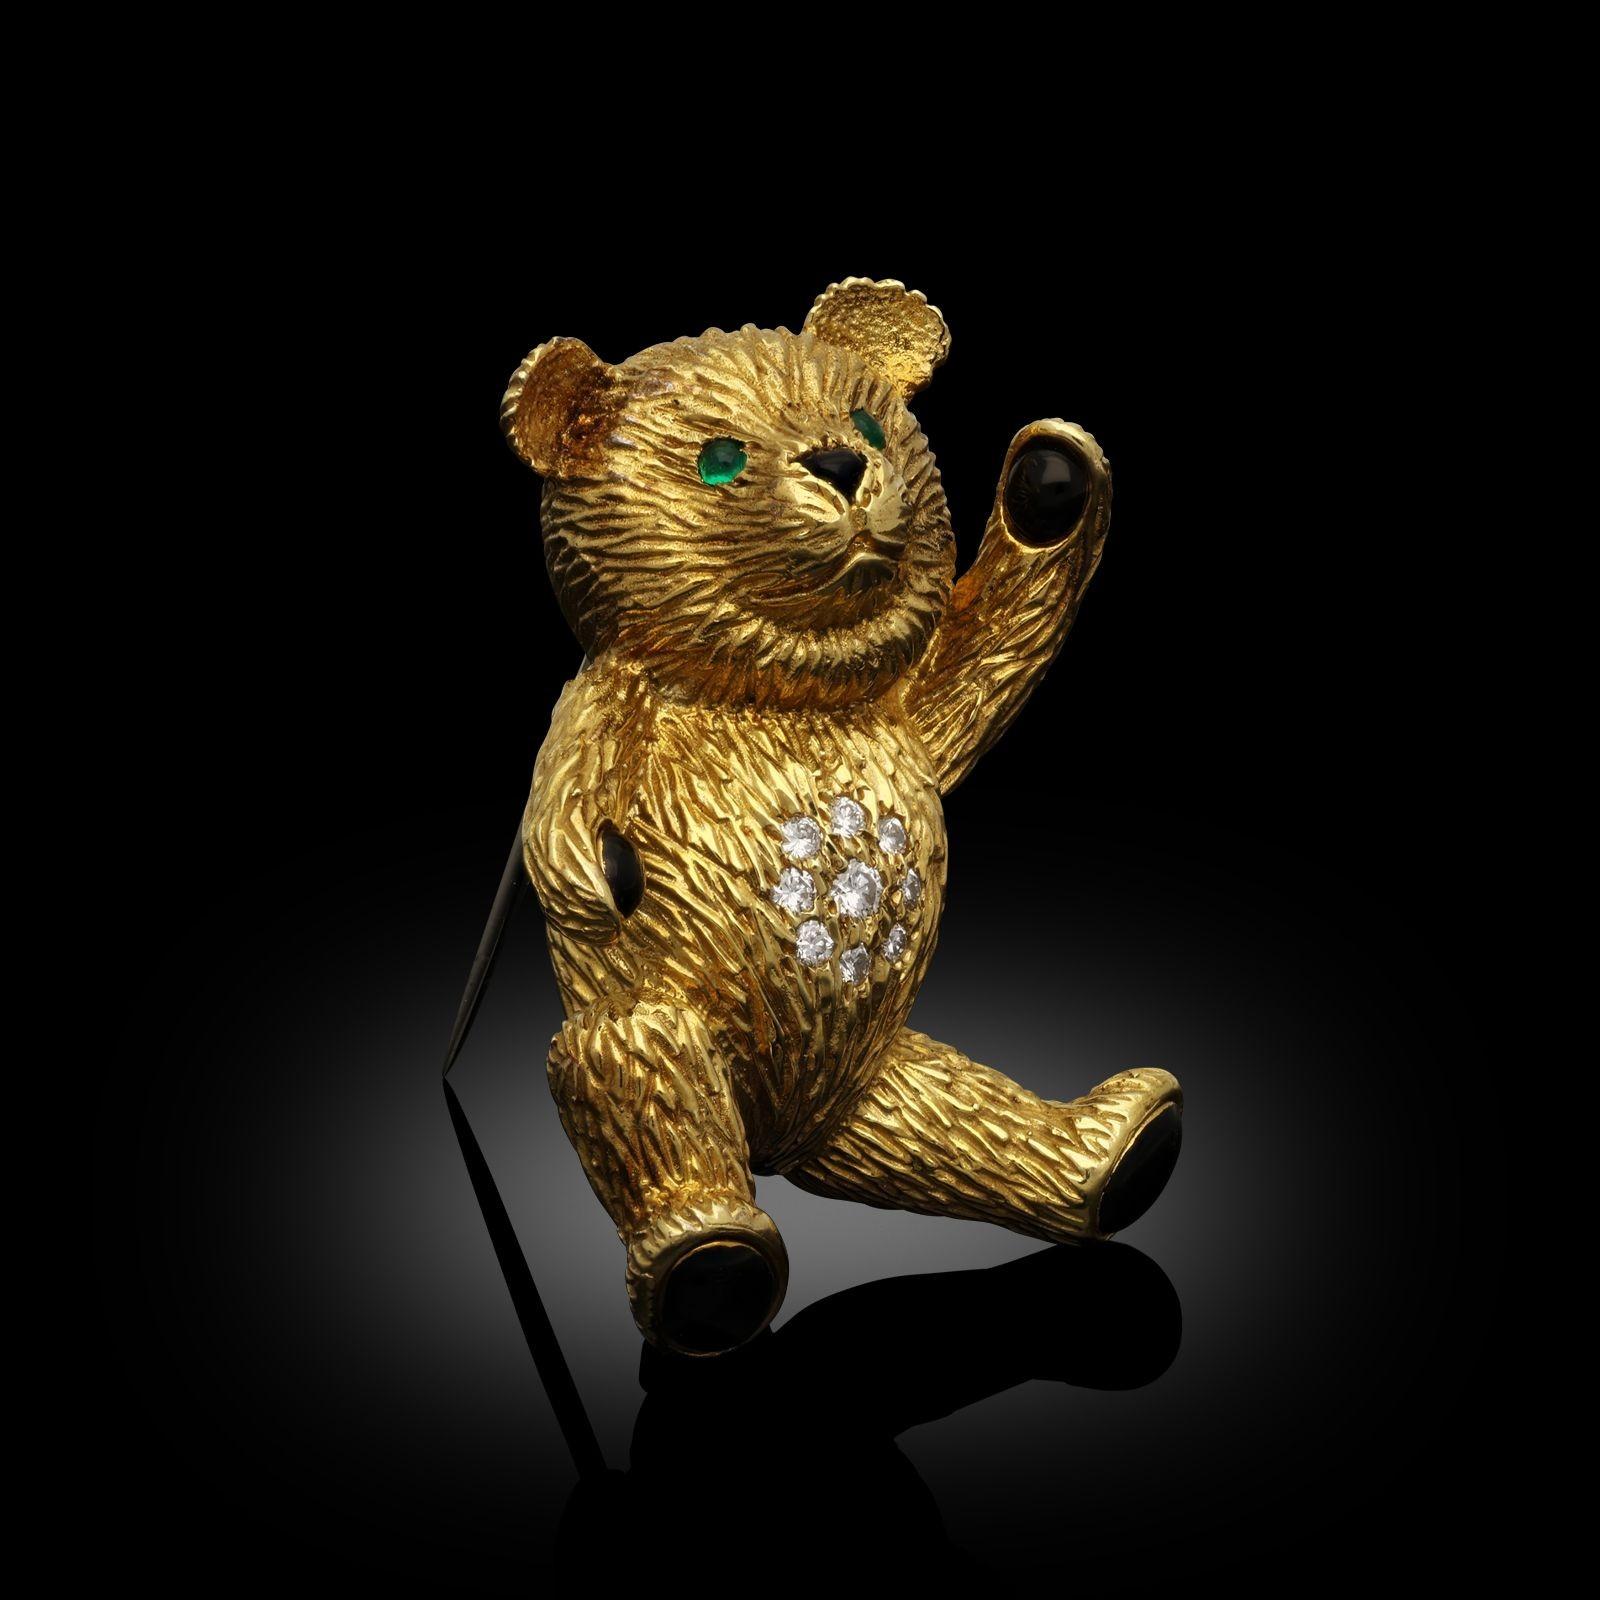 Vintage-Teddybär-Brosche aus 18 Karat Gelbgold von Cartier, 1987. Die Brosche ist in Form eines sitzenden Teddybären gestaltet, dessen Bauch mit runden Brillanten besetzt ist. Die Pfotenpads und die Nase des Bären sind mit poliertem schwarzem Onyx